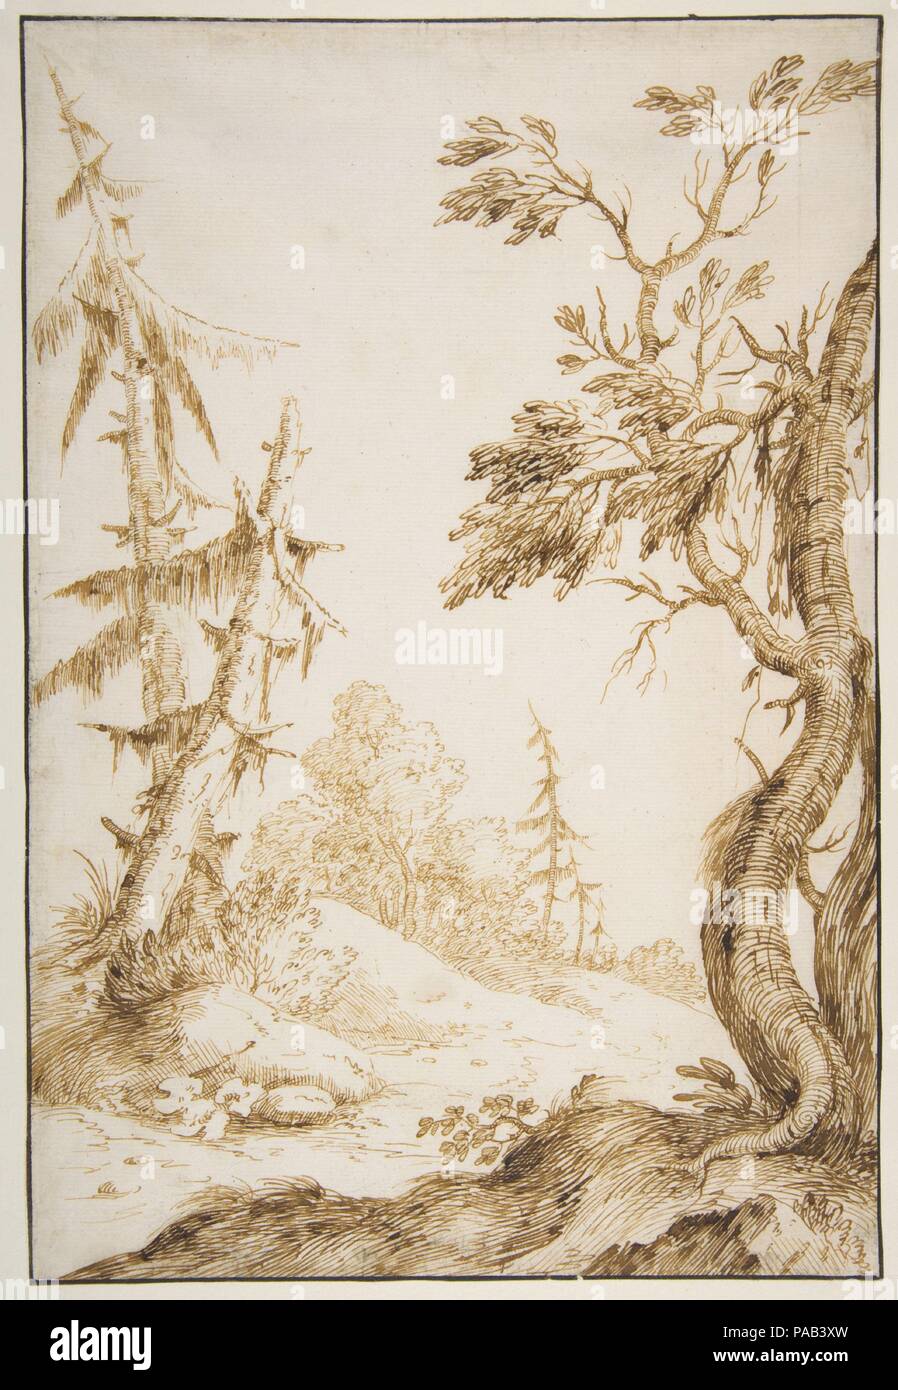 En échange d'un paysage boisé. Artiste : Marco Ricci (Italien, Belluno 1676-1730 Venise ( ?)). Dimensions : 11 1/2 x 7 13/16dans. (29,2 x 19,8 cm). Date : 1676-1730. Musée : Metropolitan Museum of Art, New York, USA. Banque D'Images